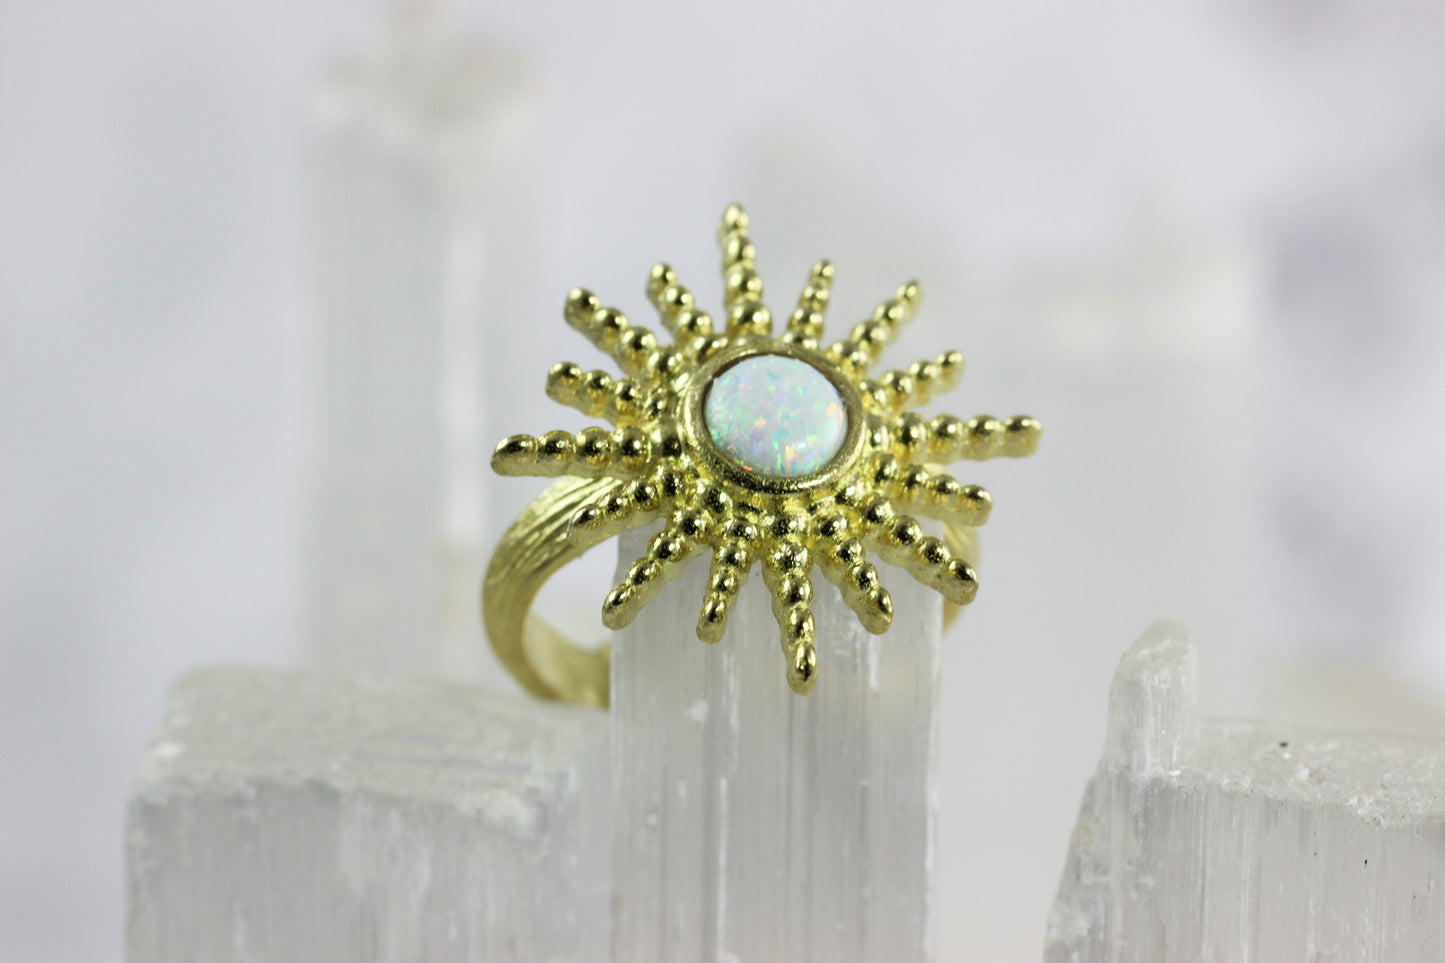 Opal Sunburst Ring